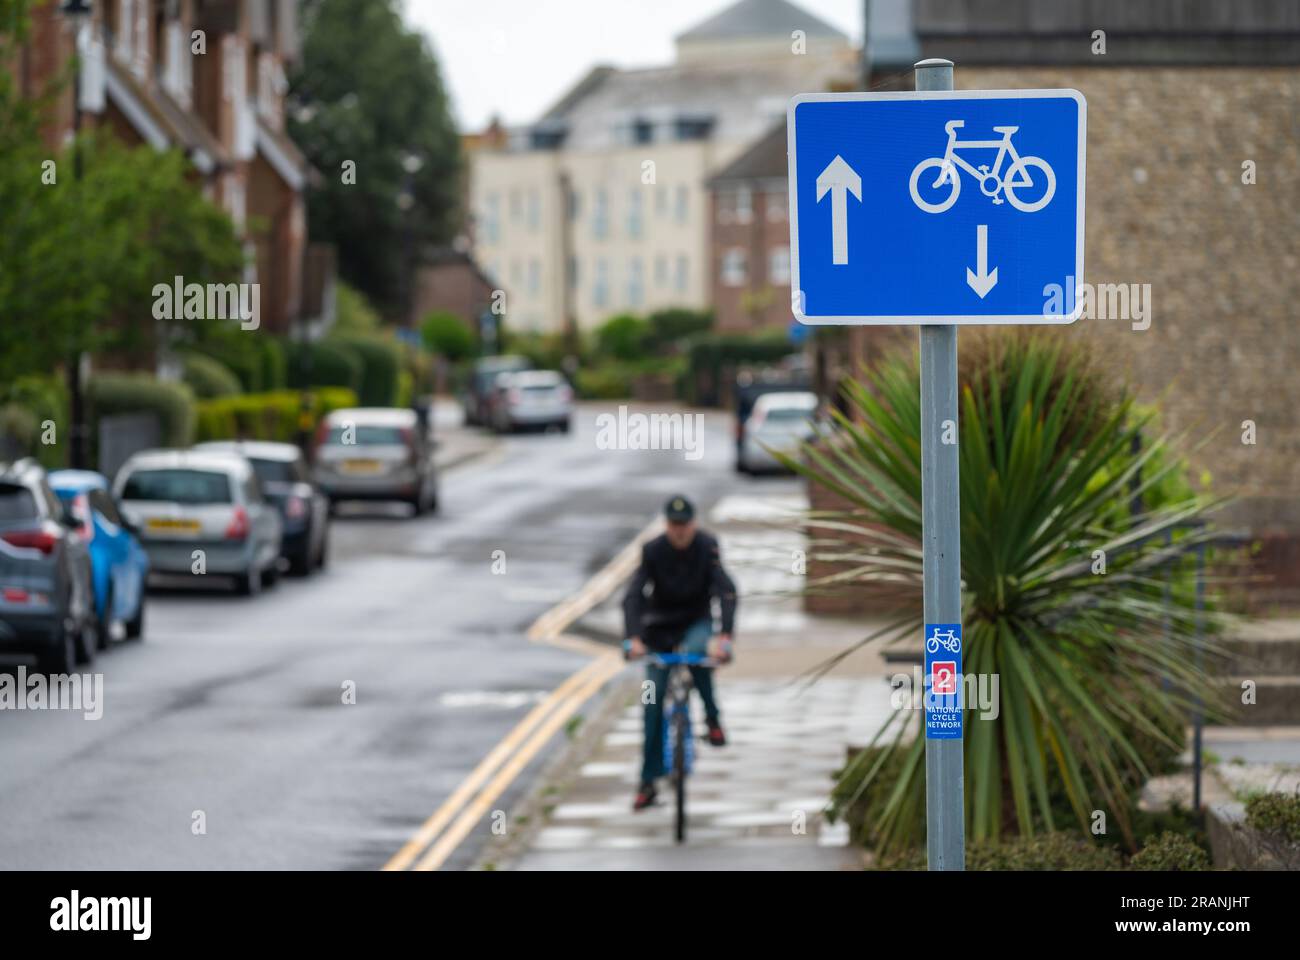 Hinweisschild mit Radfahrer auf einer Einbahnstraße, britische Straße, 2 Wege für Radfahrer, aber 1 Weg für Autos. In England, Großbritannien. Stockfoto